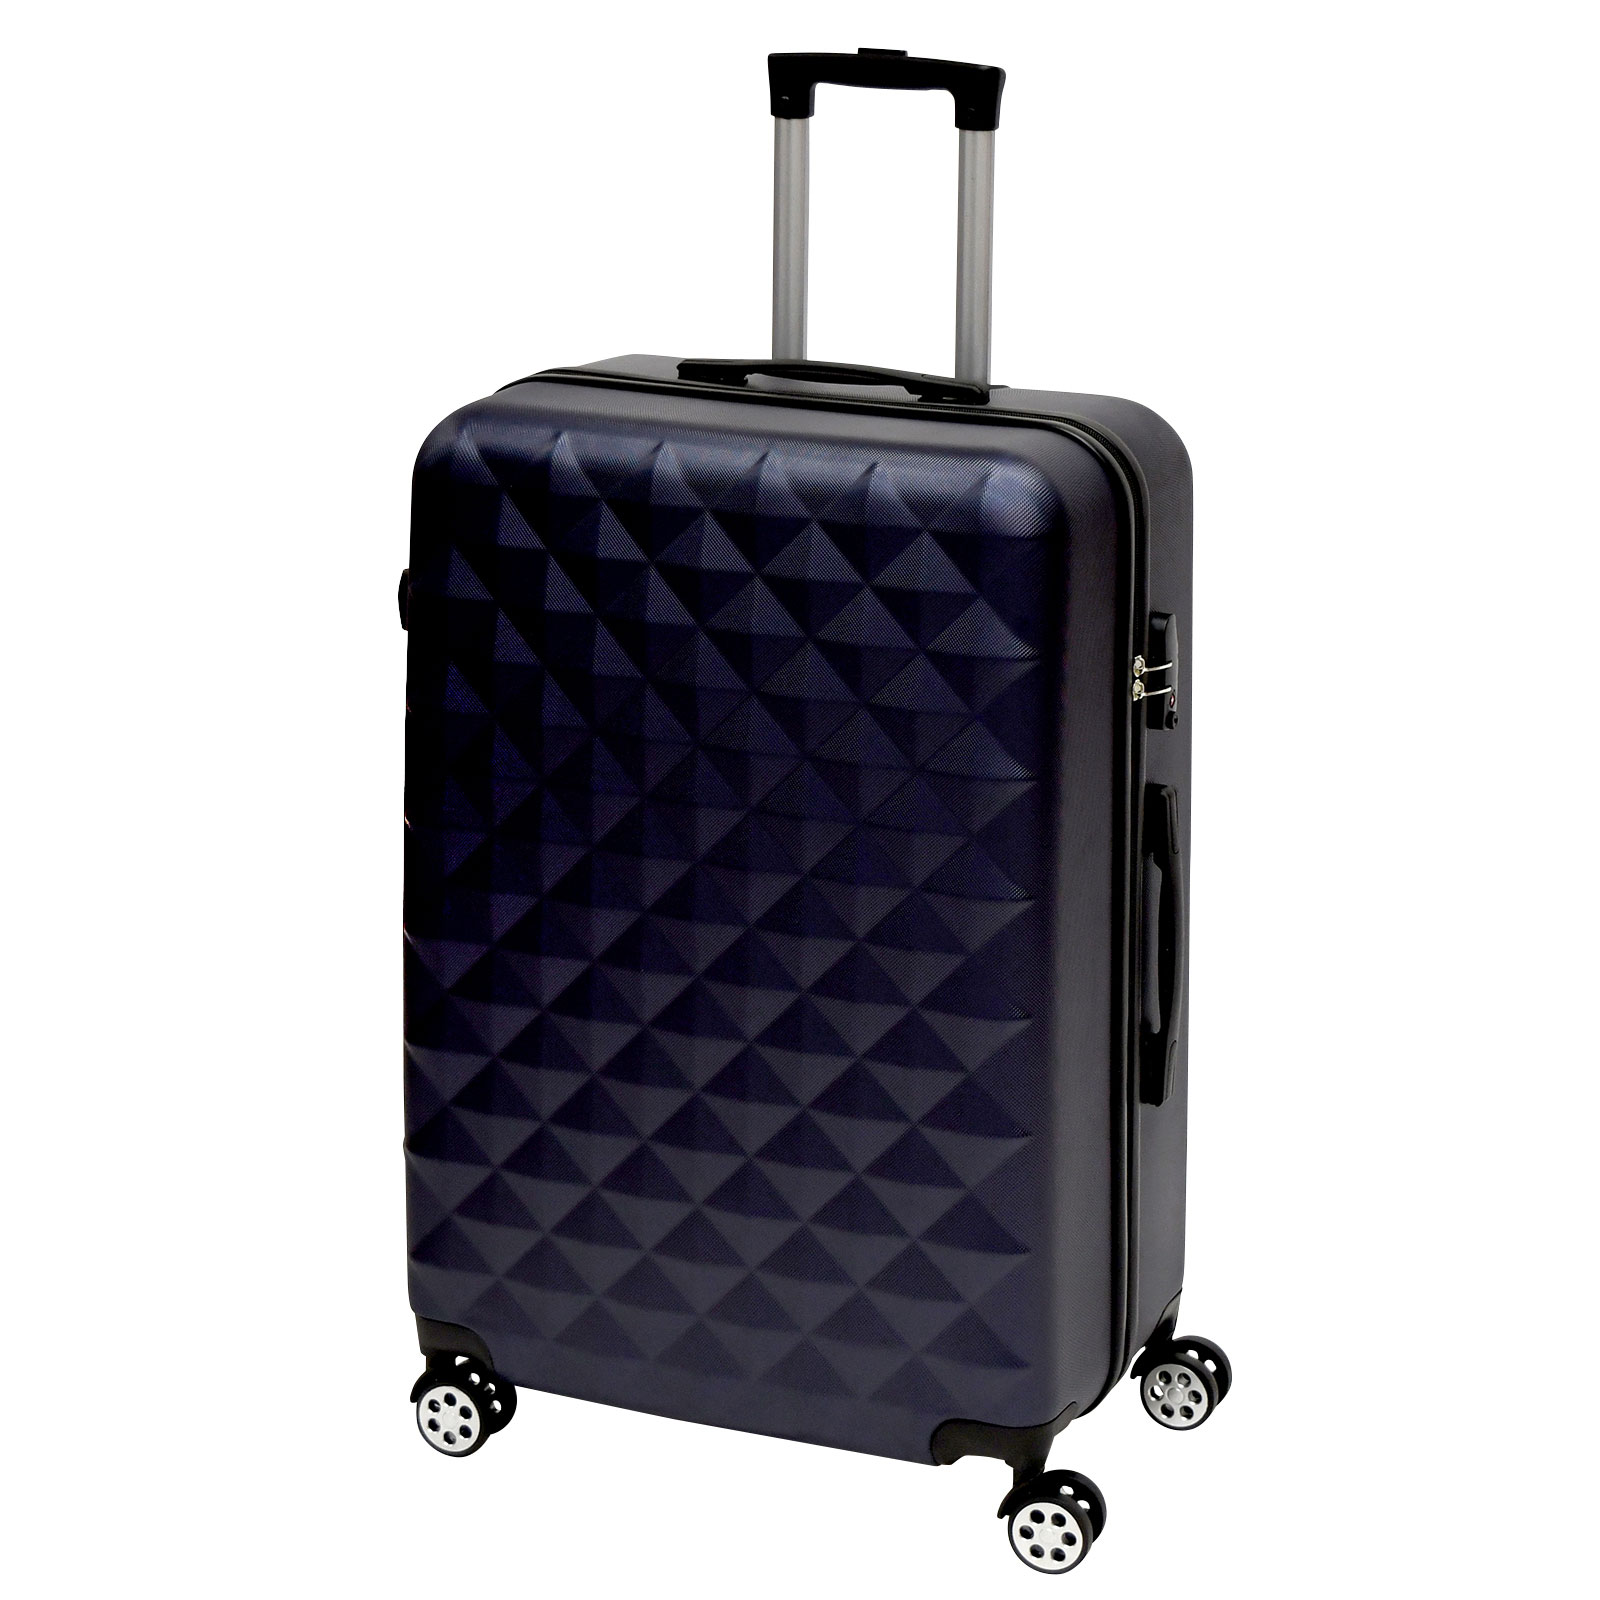 キャリーケース lサイズ スーツケース 容量98L L 可愛い かわいい キャリーバッグ 大型 TSAロック プリズム 軽量 重さ約3.6kg 静音  ダブルキャスター 8輪